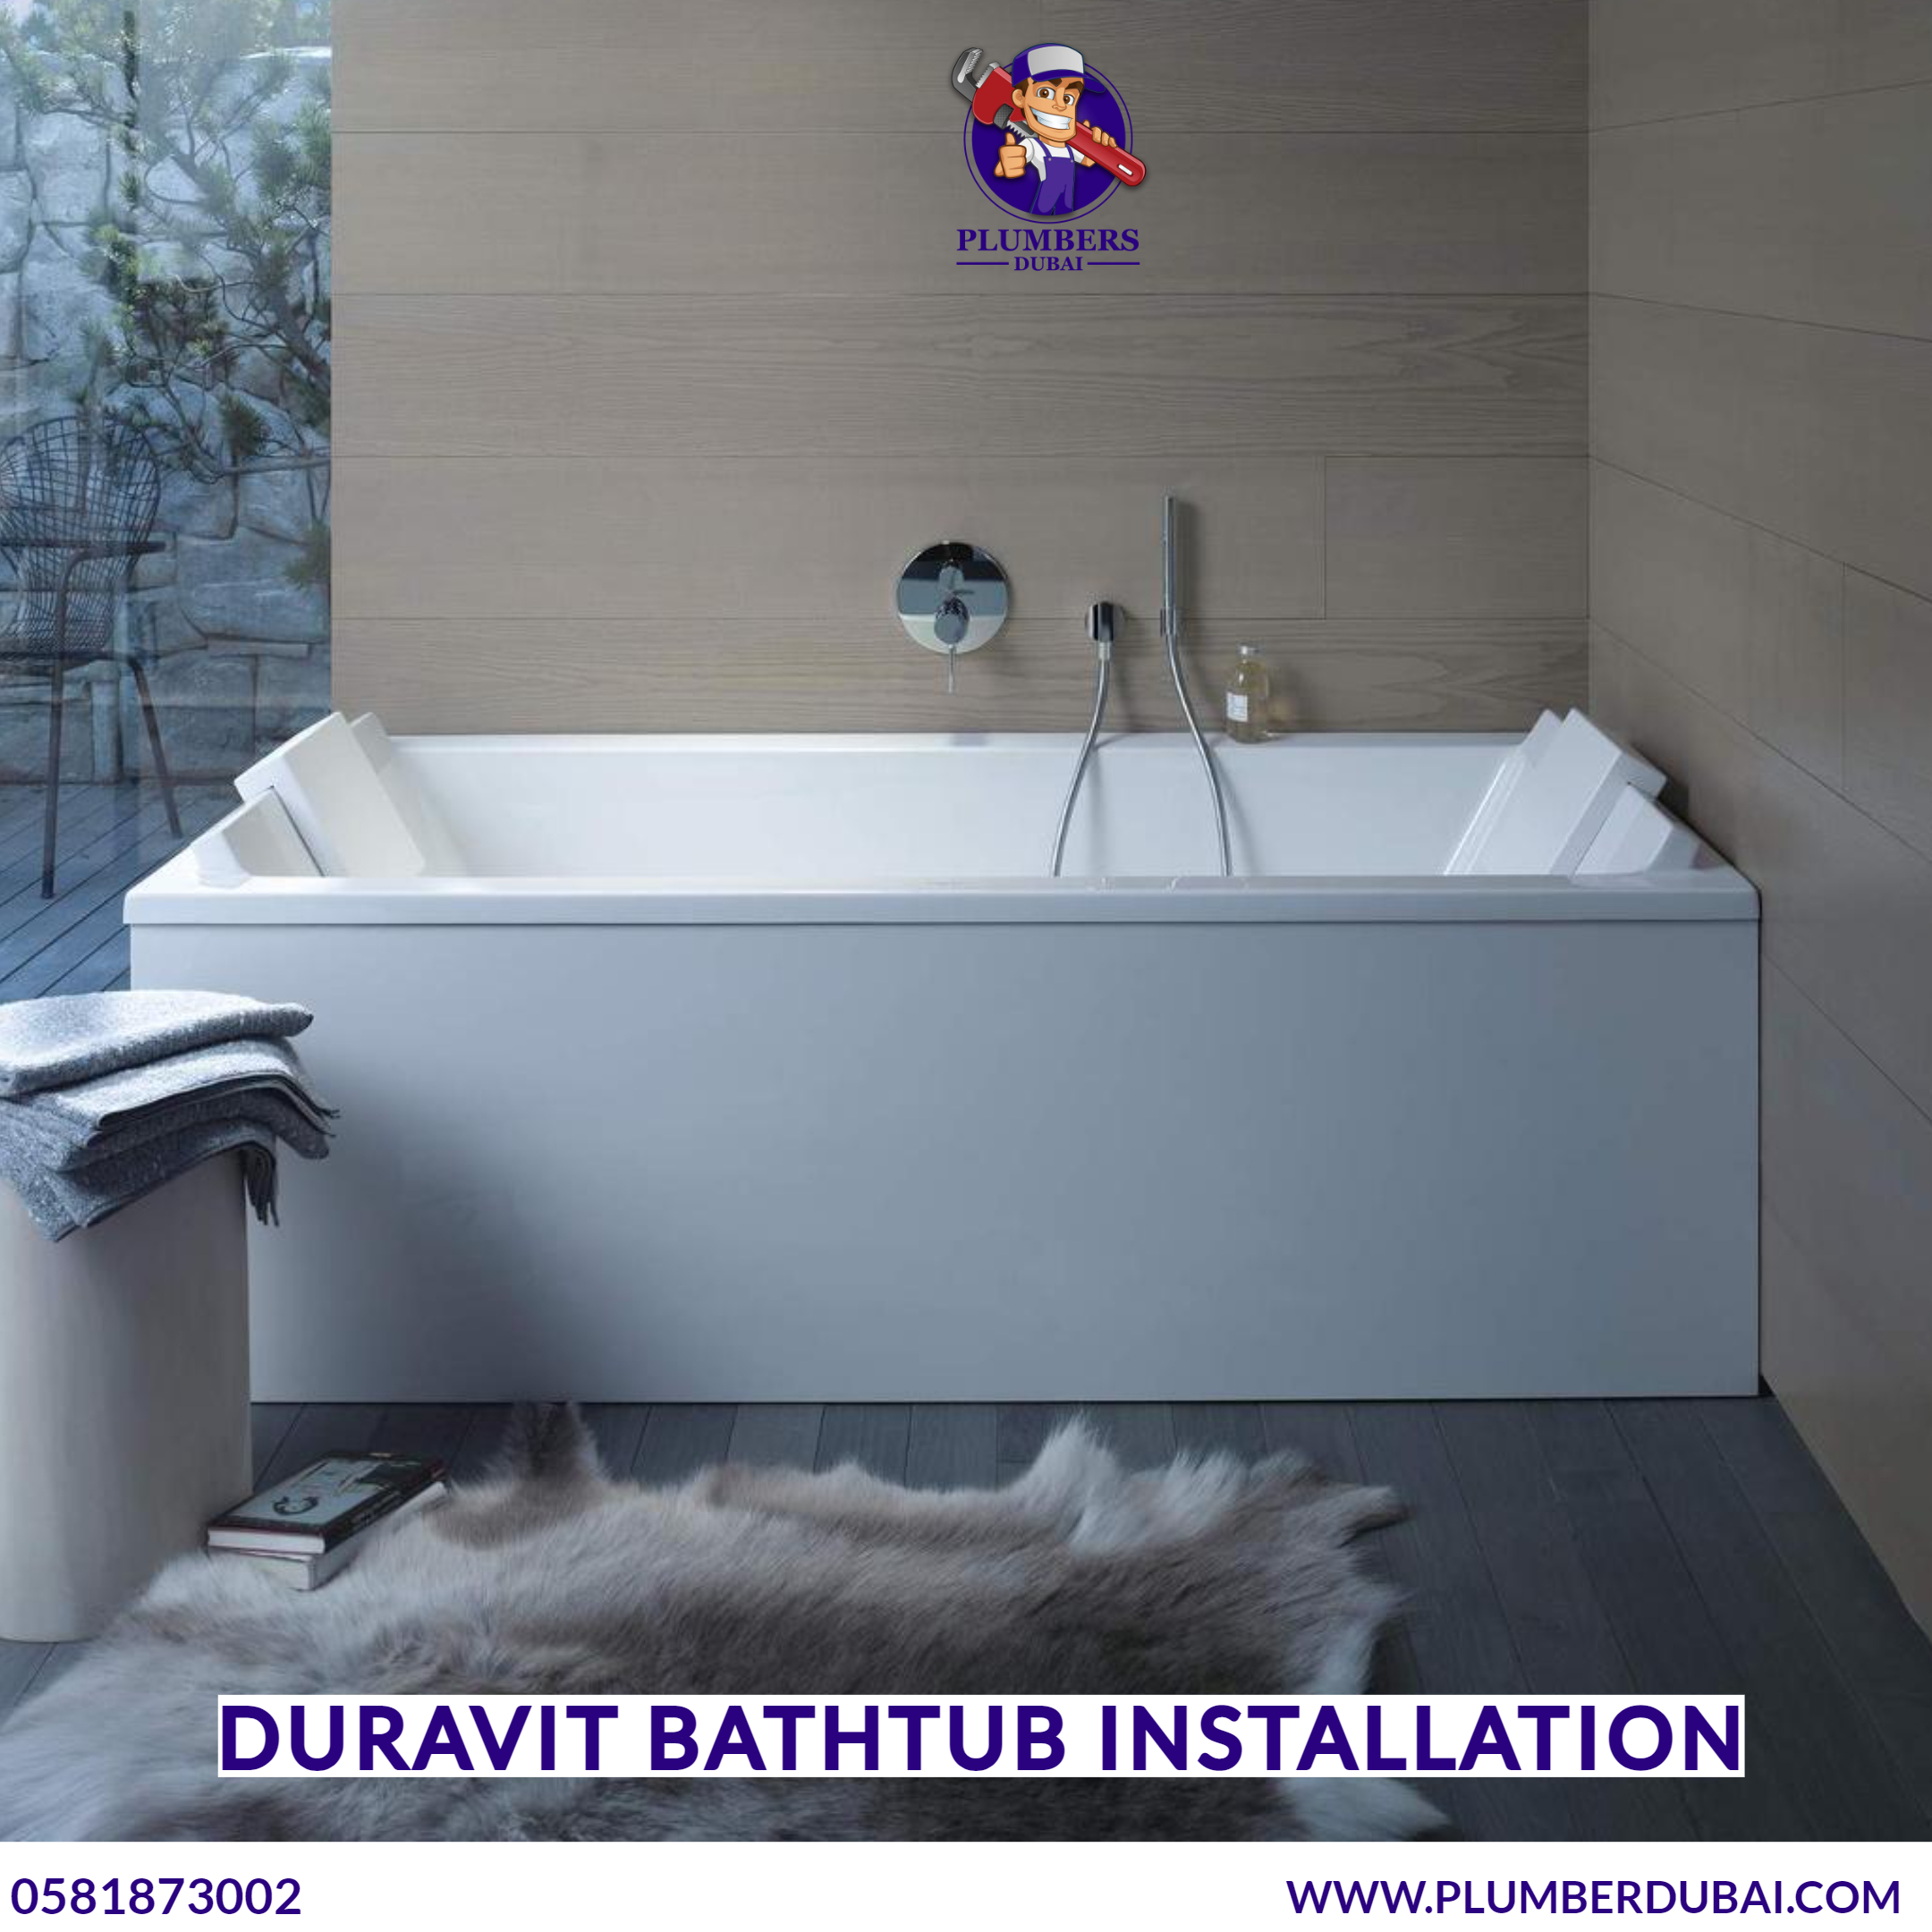 Duravit bathtub installation